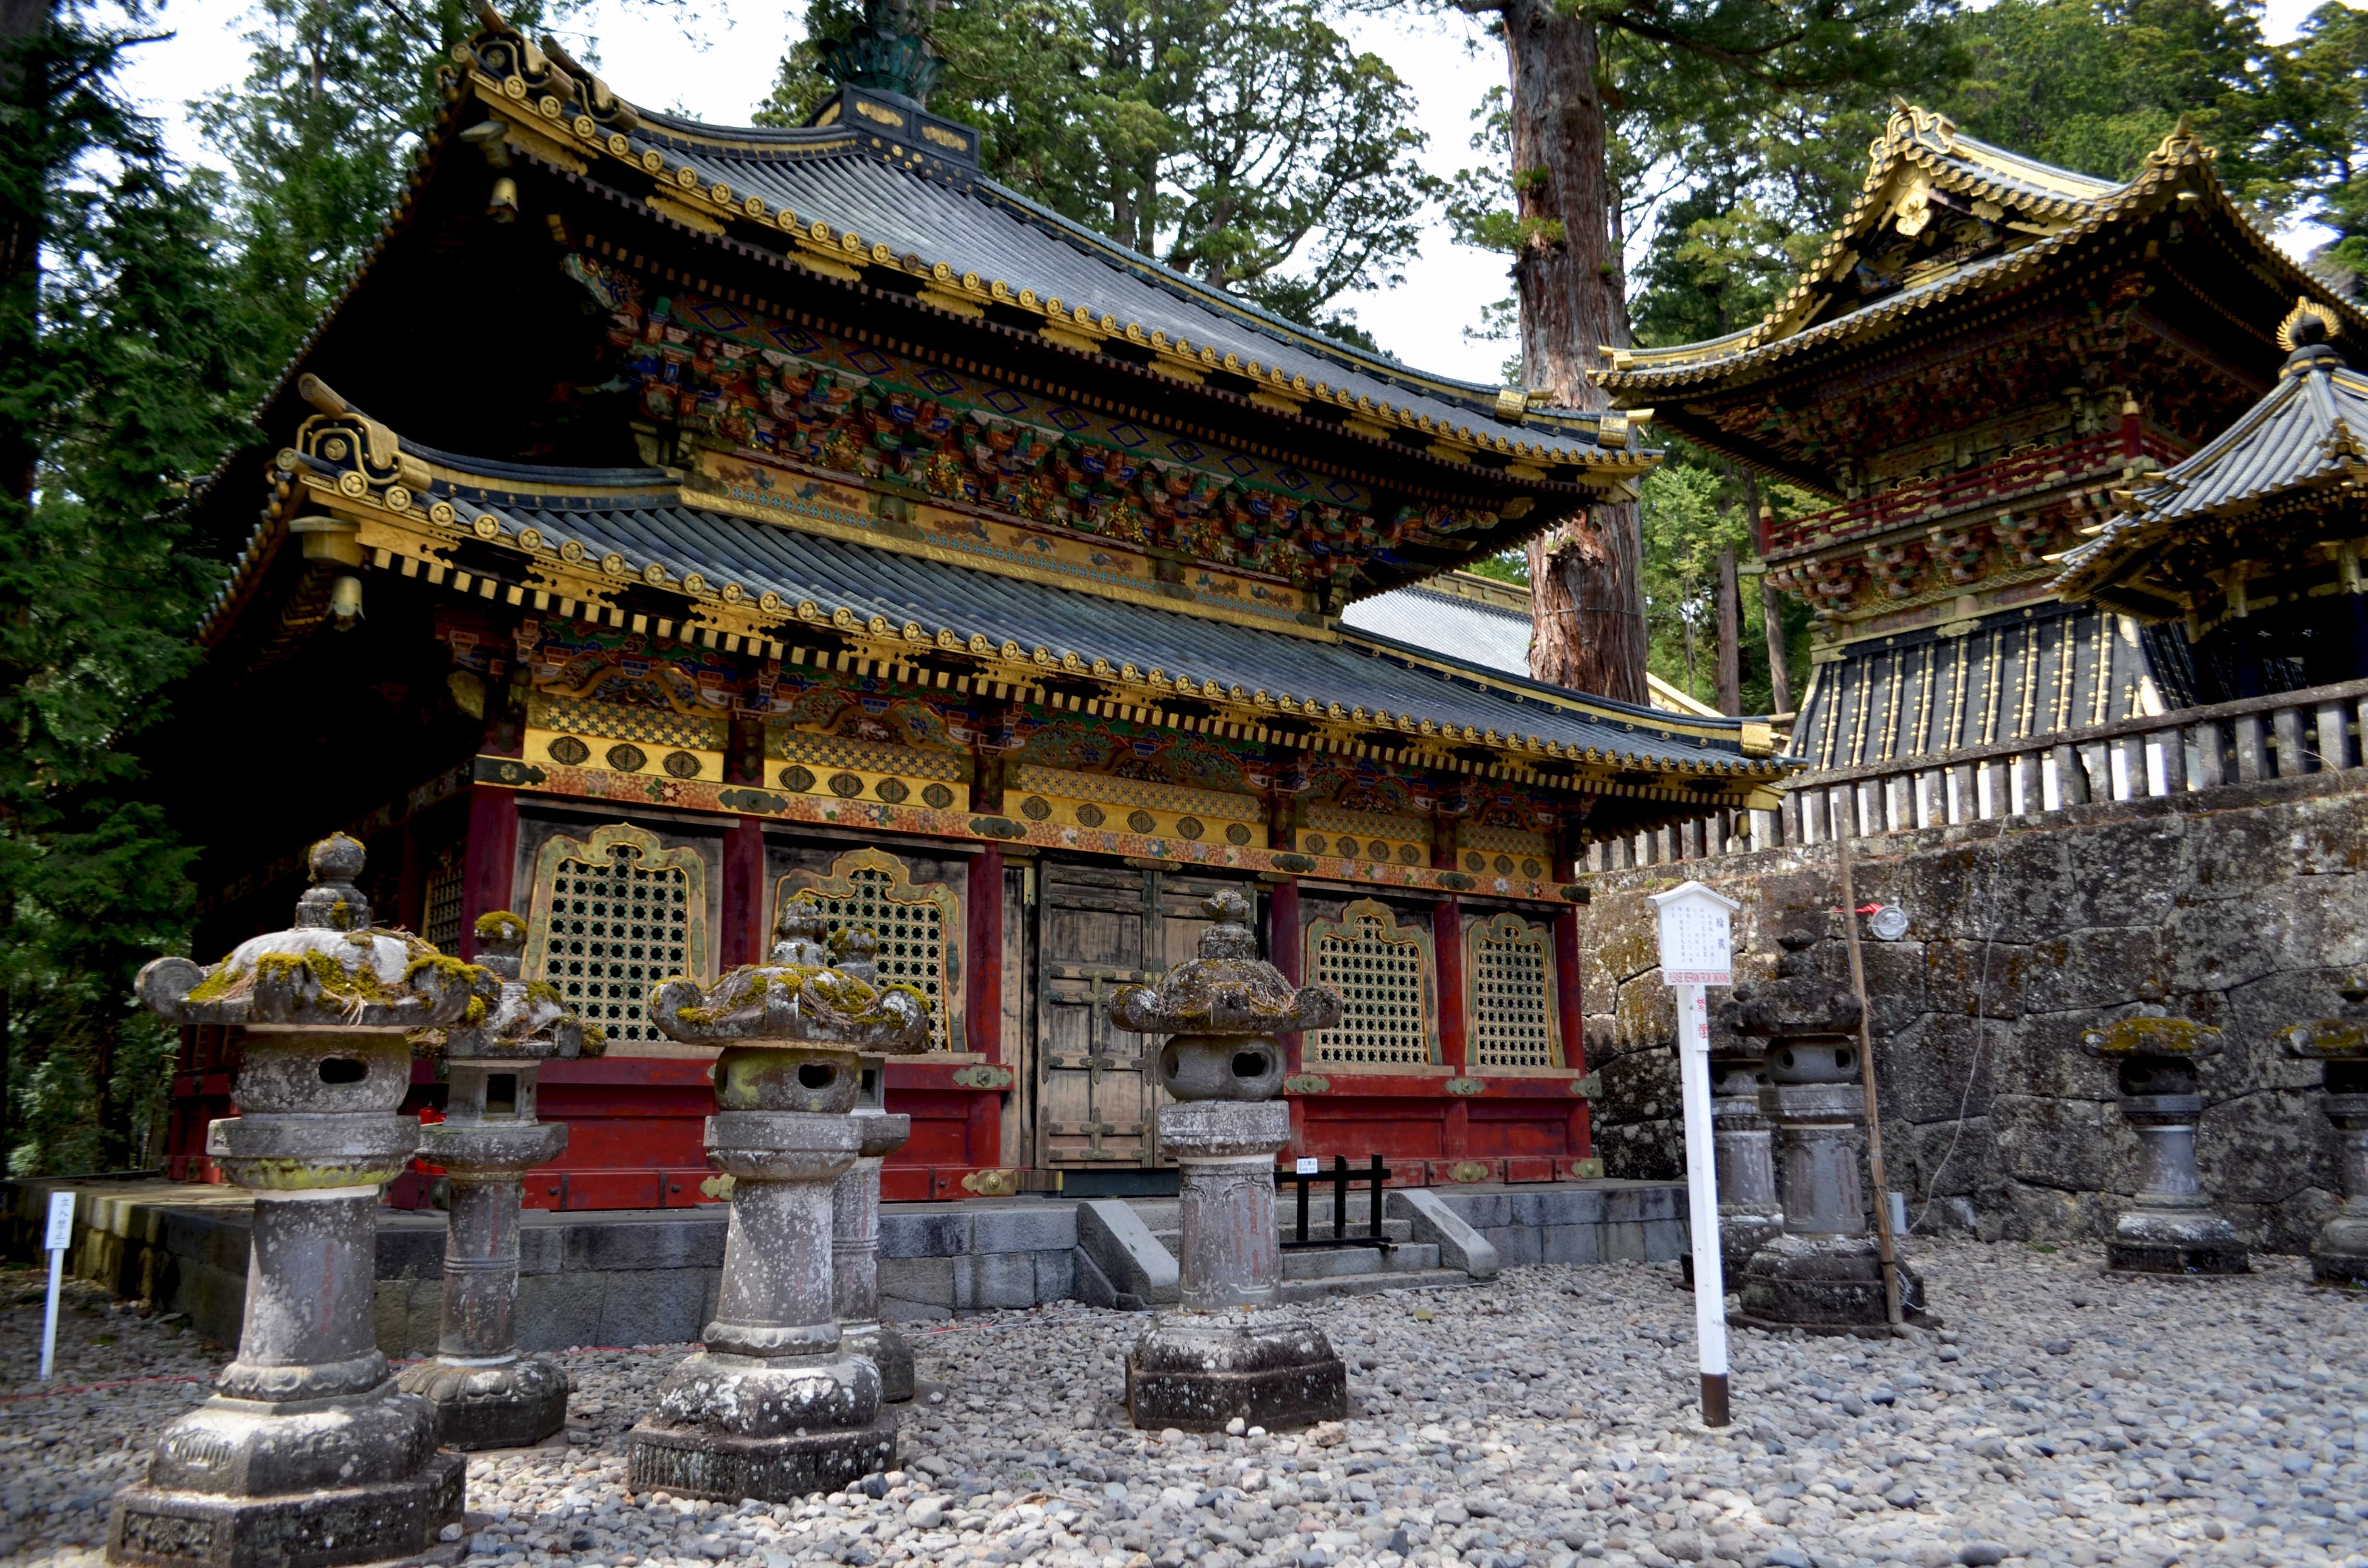  Nikko – Most Famous Temple Complex